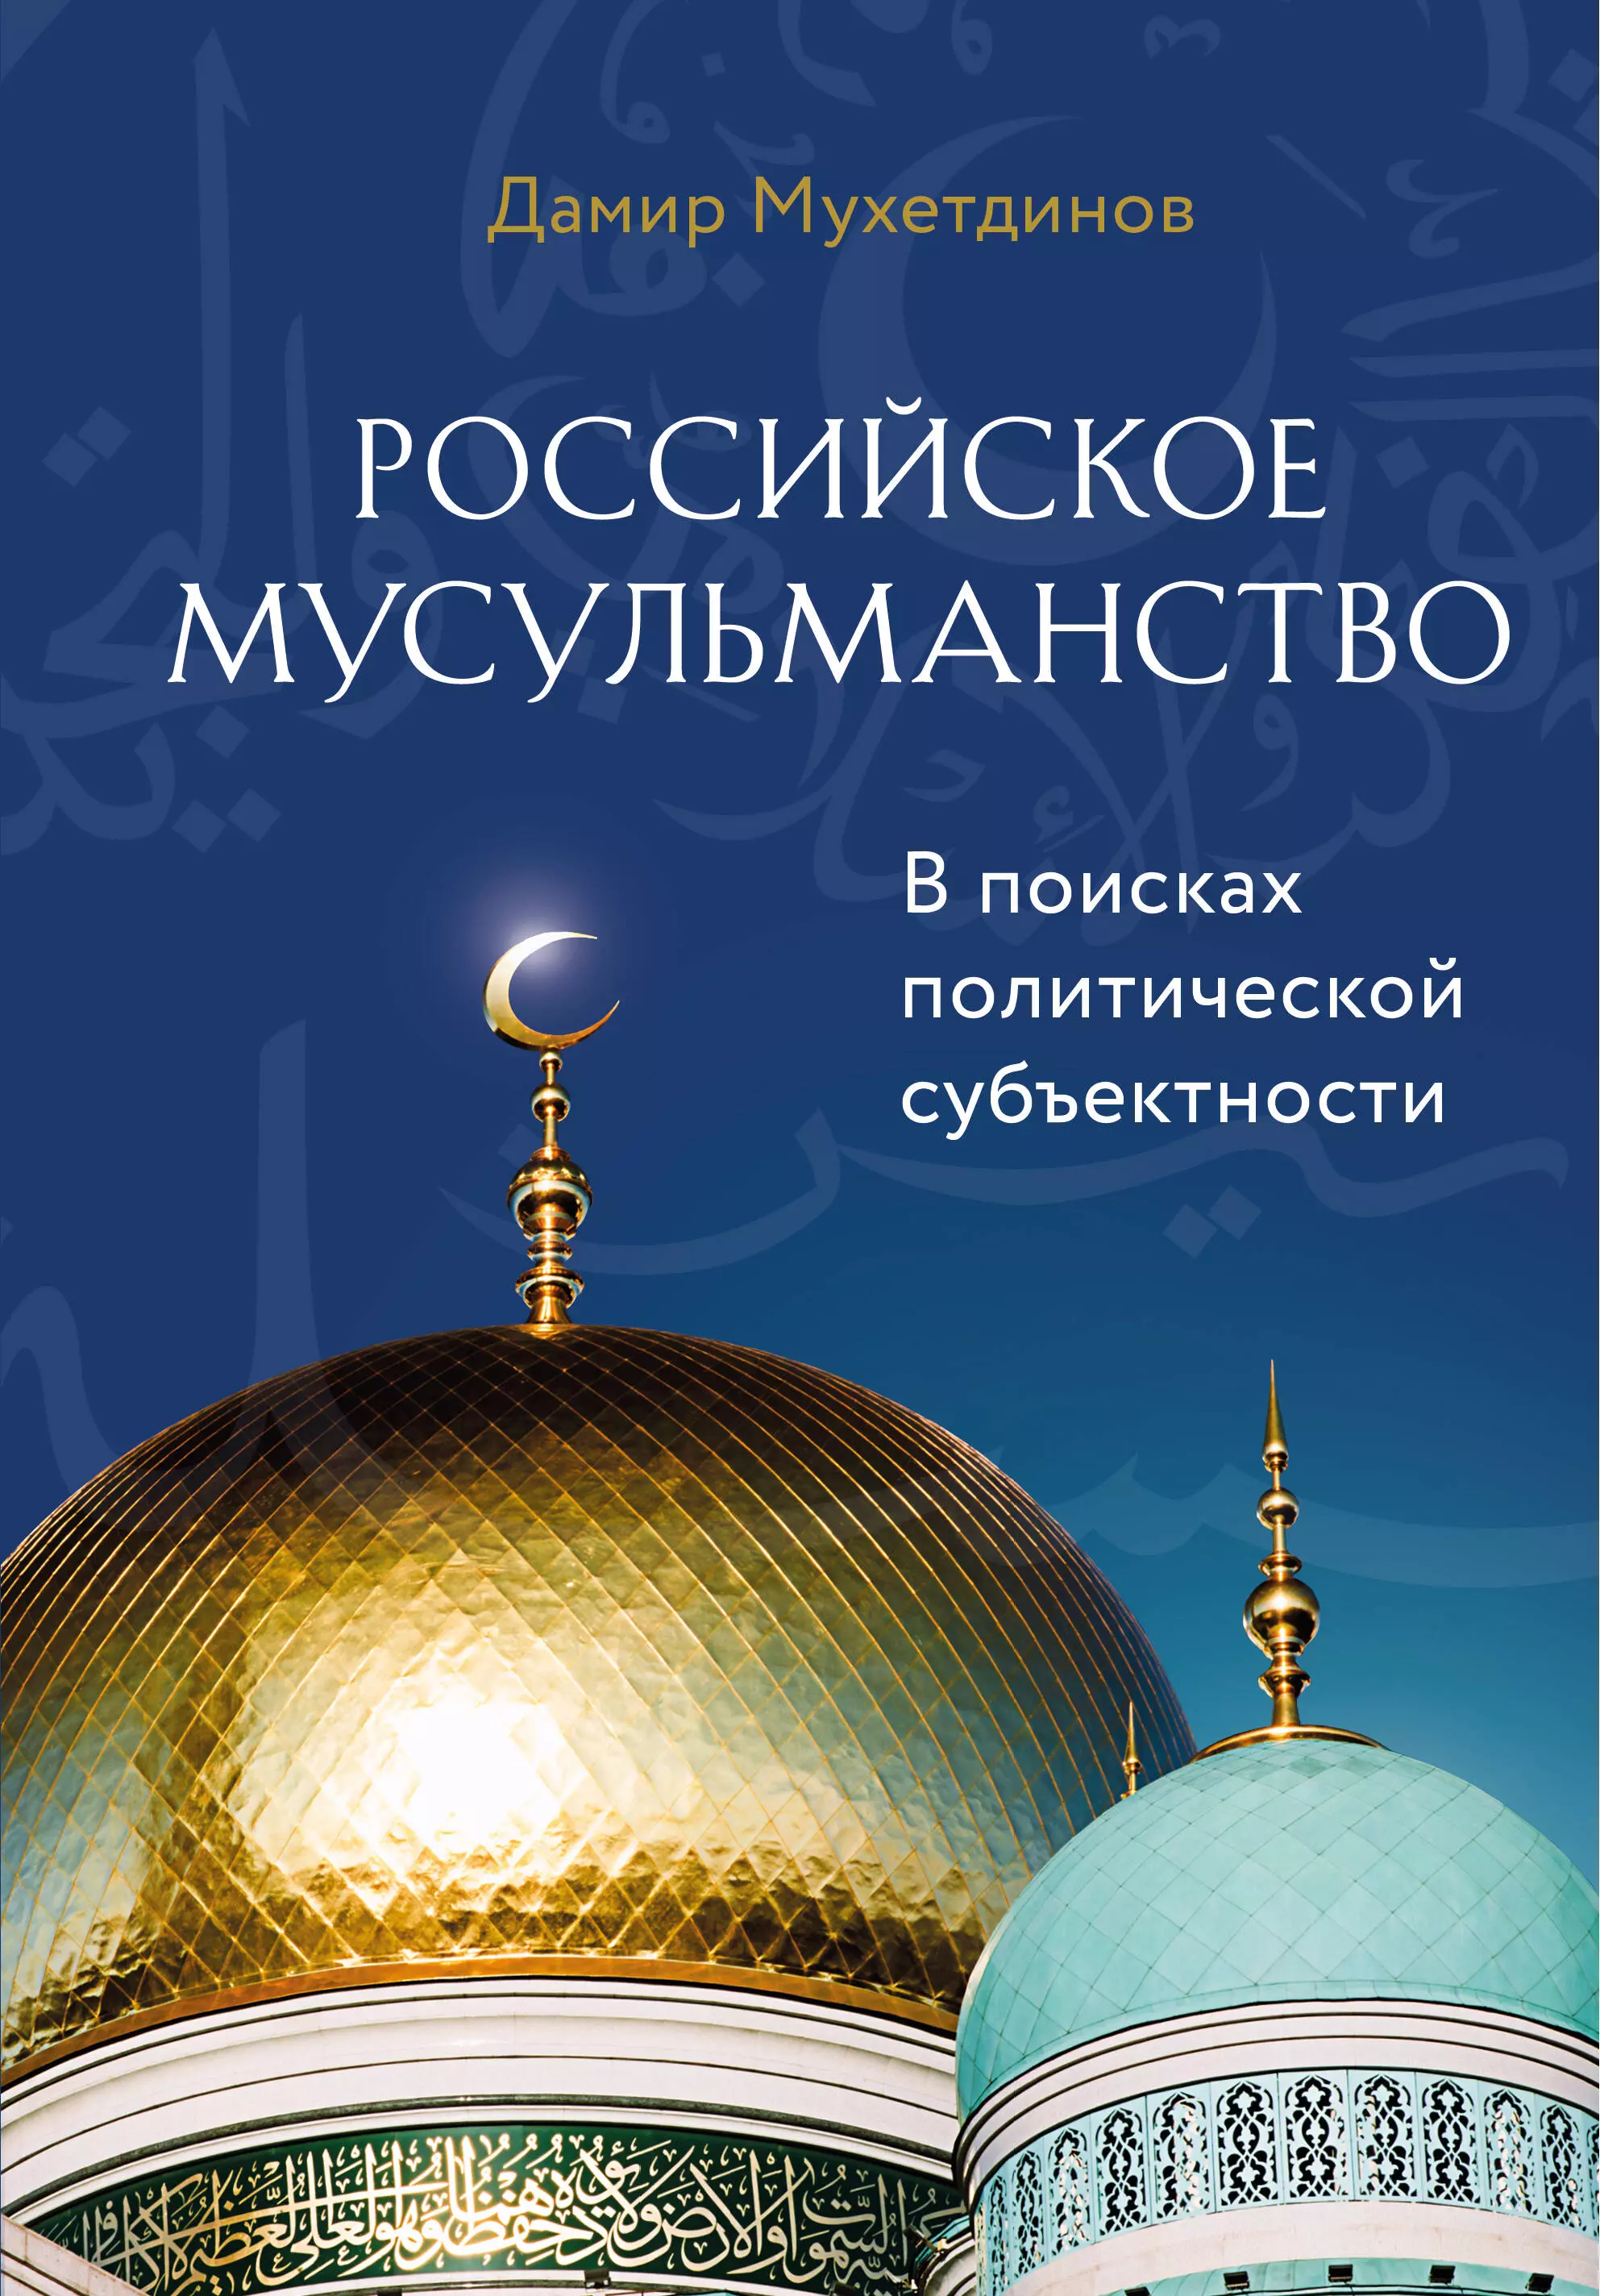 Мухетдинов Дамир Ваисович - Российское мусульманство